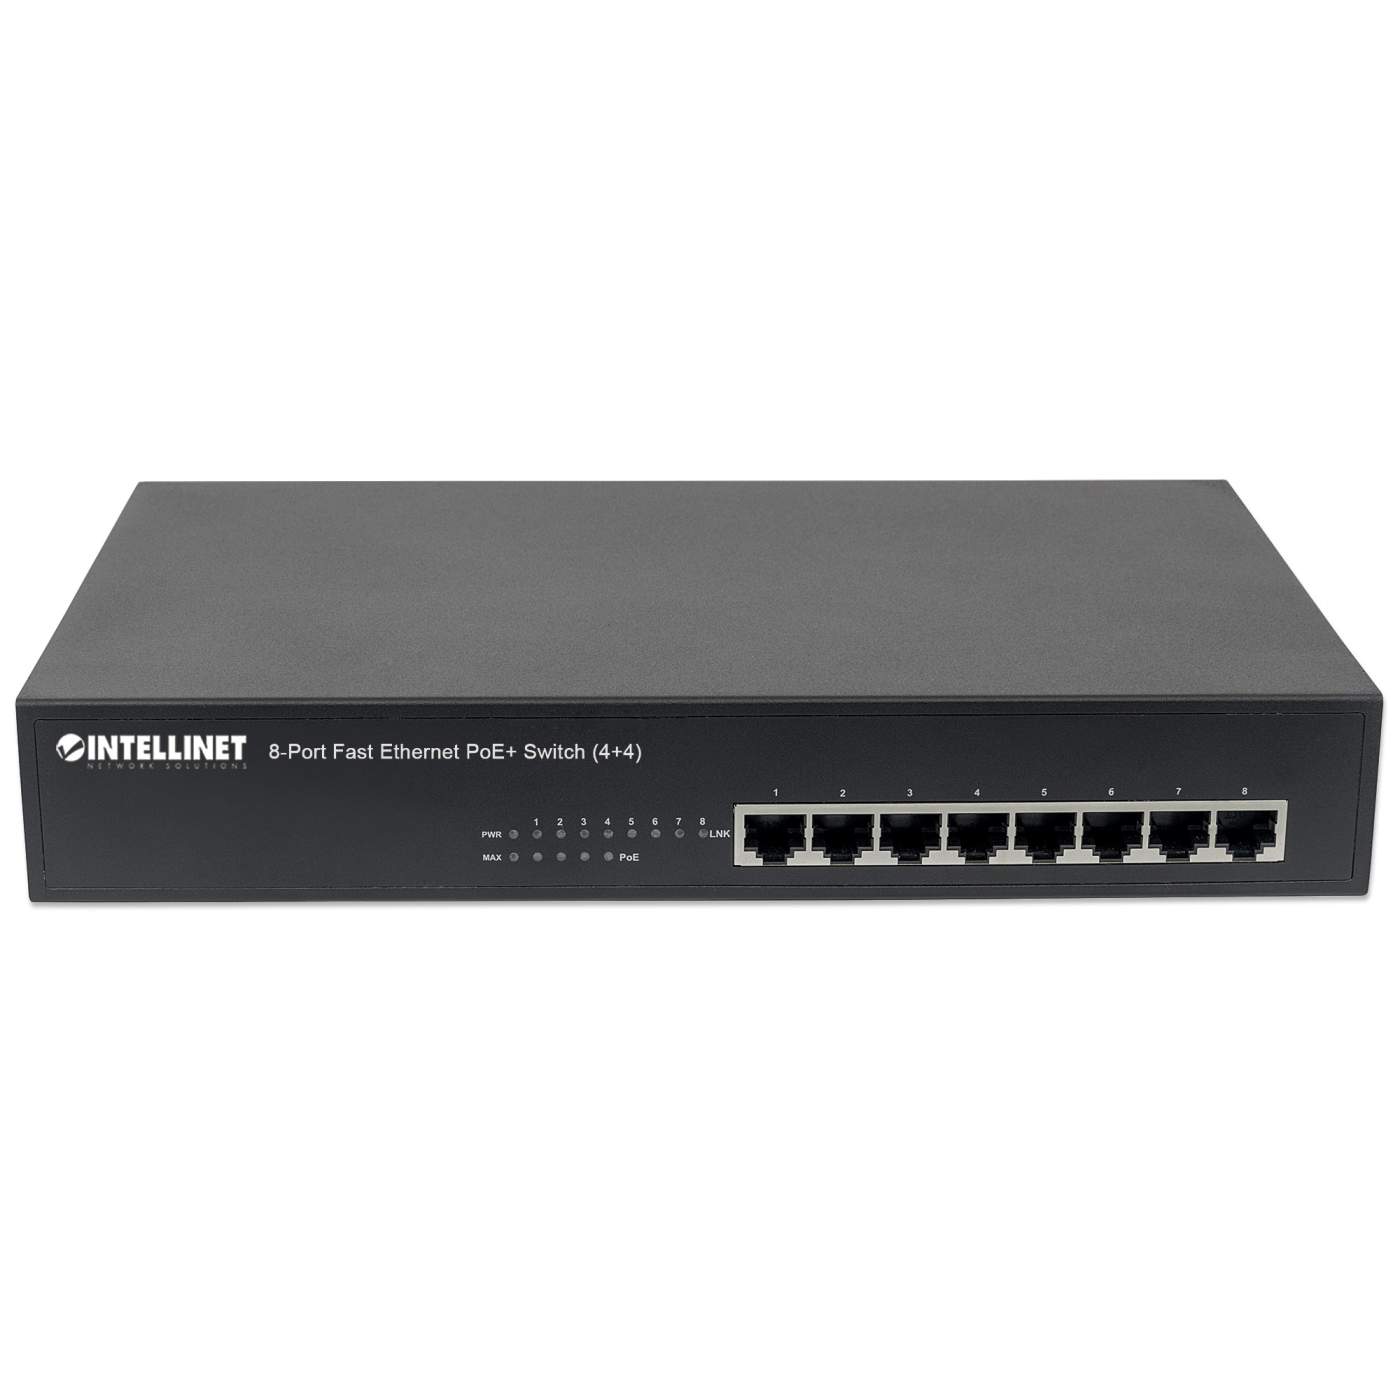 Intellinet 8-Port Fast Ethernet PoE+ Switch (561075) – Intellinet